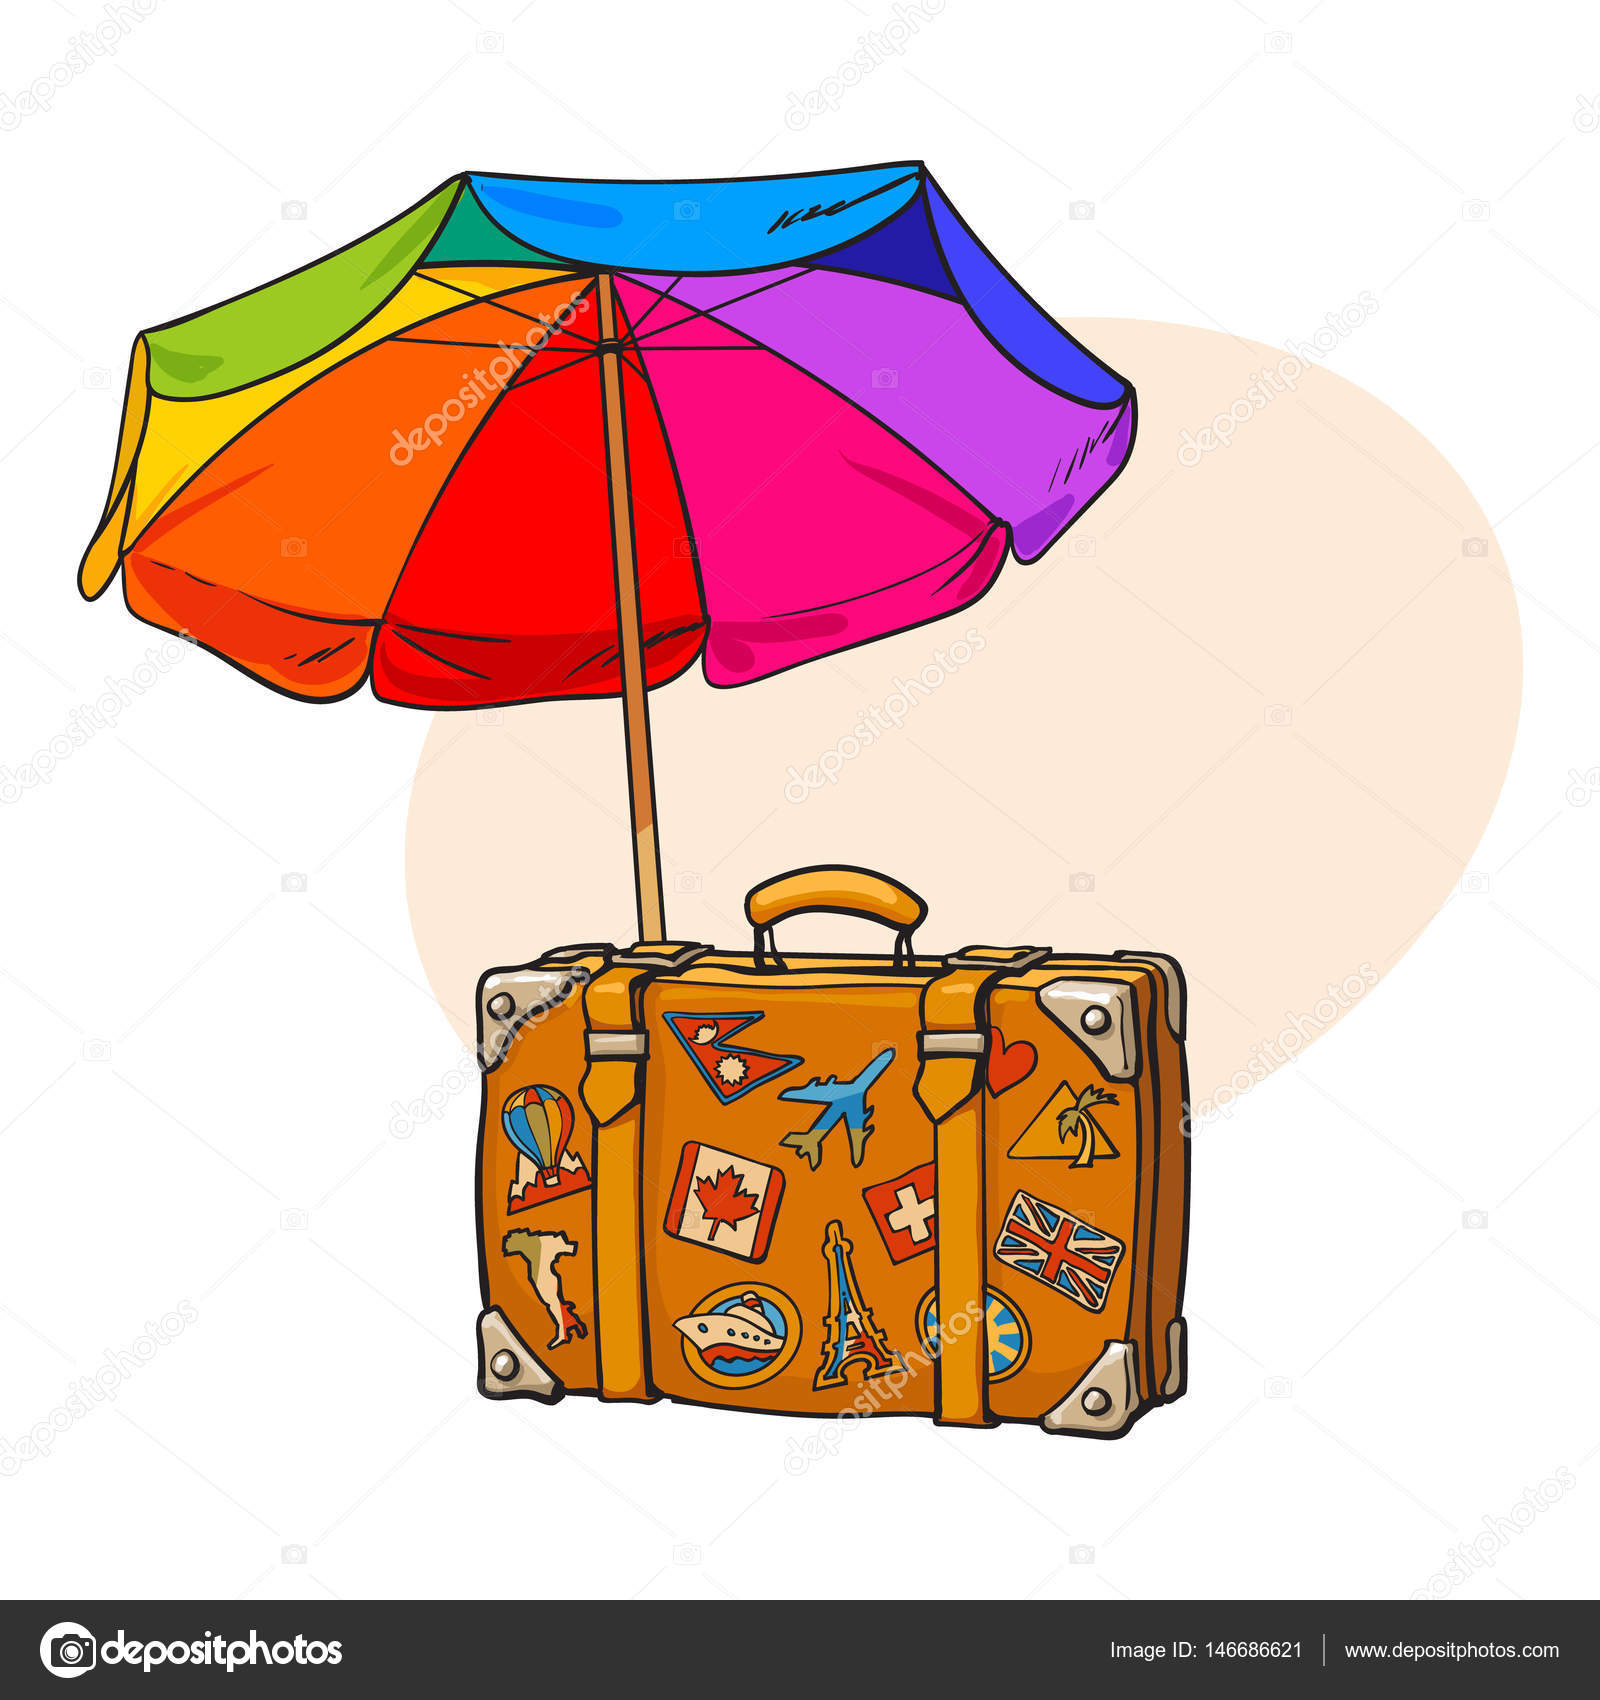 puur armoede Incident, evenement Regenboog gekleurde, open parasol en reizen koffer met bagage stickers  vectorafbeelding door © Sabelskaya ⬇ Vectorstock #146686621